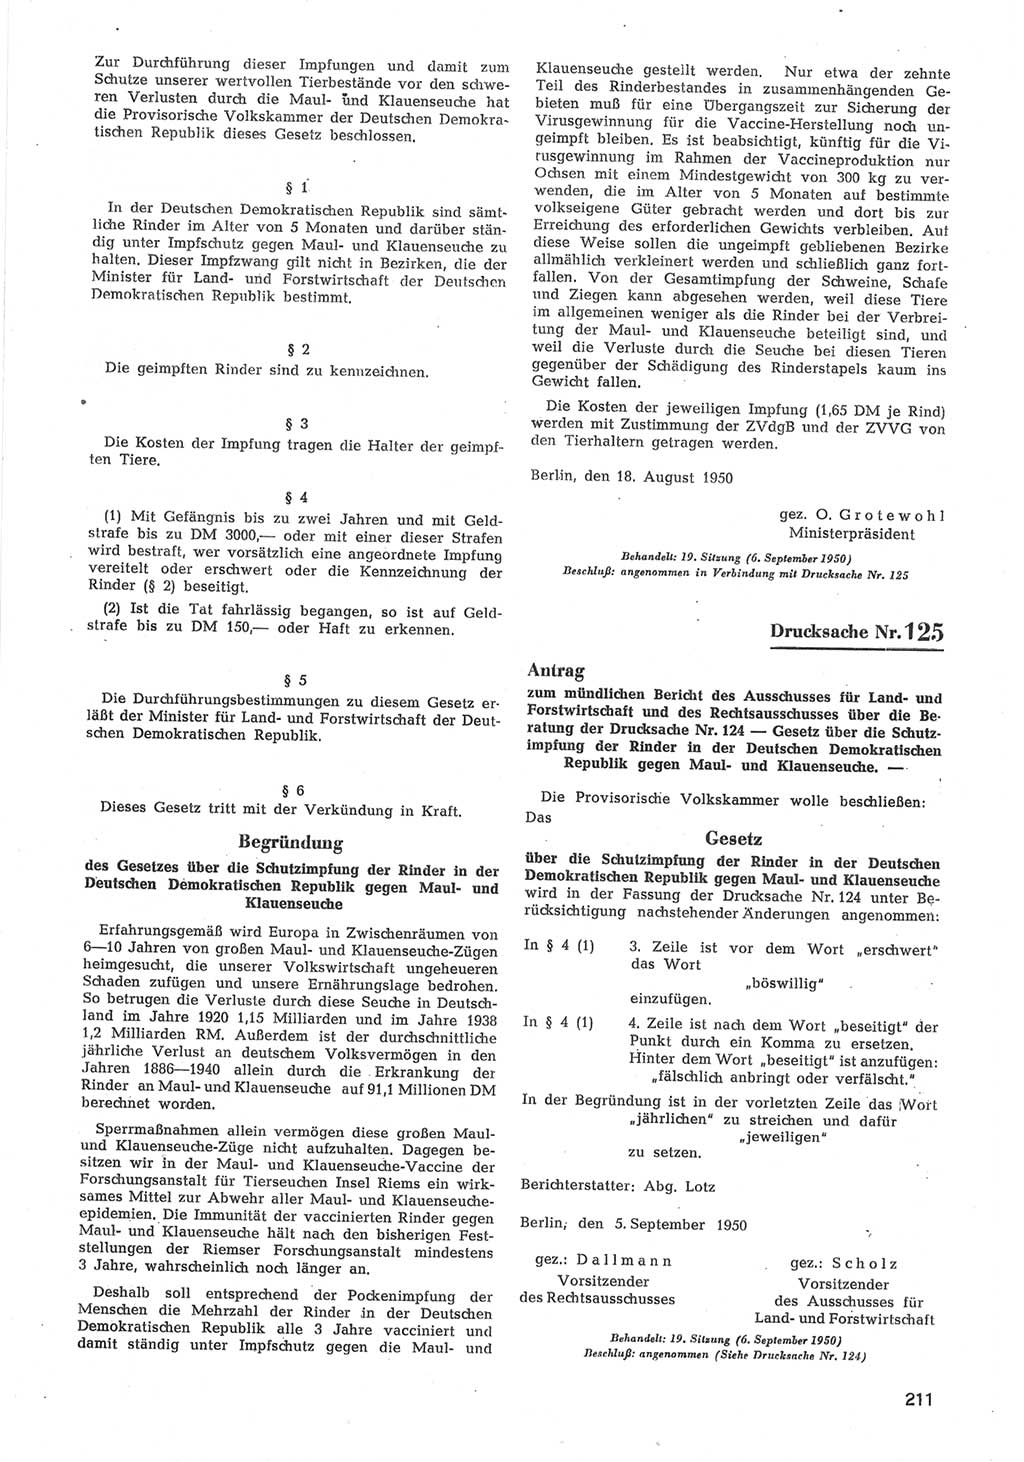 Provisorische Volkskammer (VK) der Deutschen Demokratischen Republik (DDR) 1949-1950, Dokument 813 (Prov. VK DDR 1949-1950, Dok. 813)